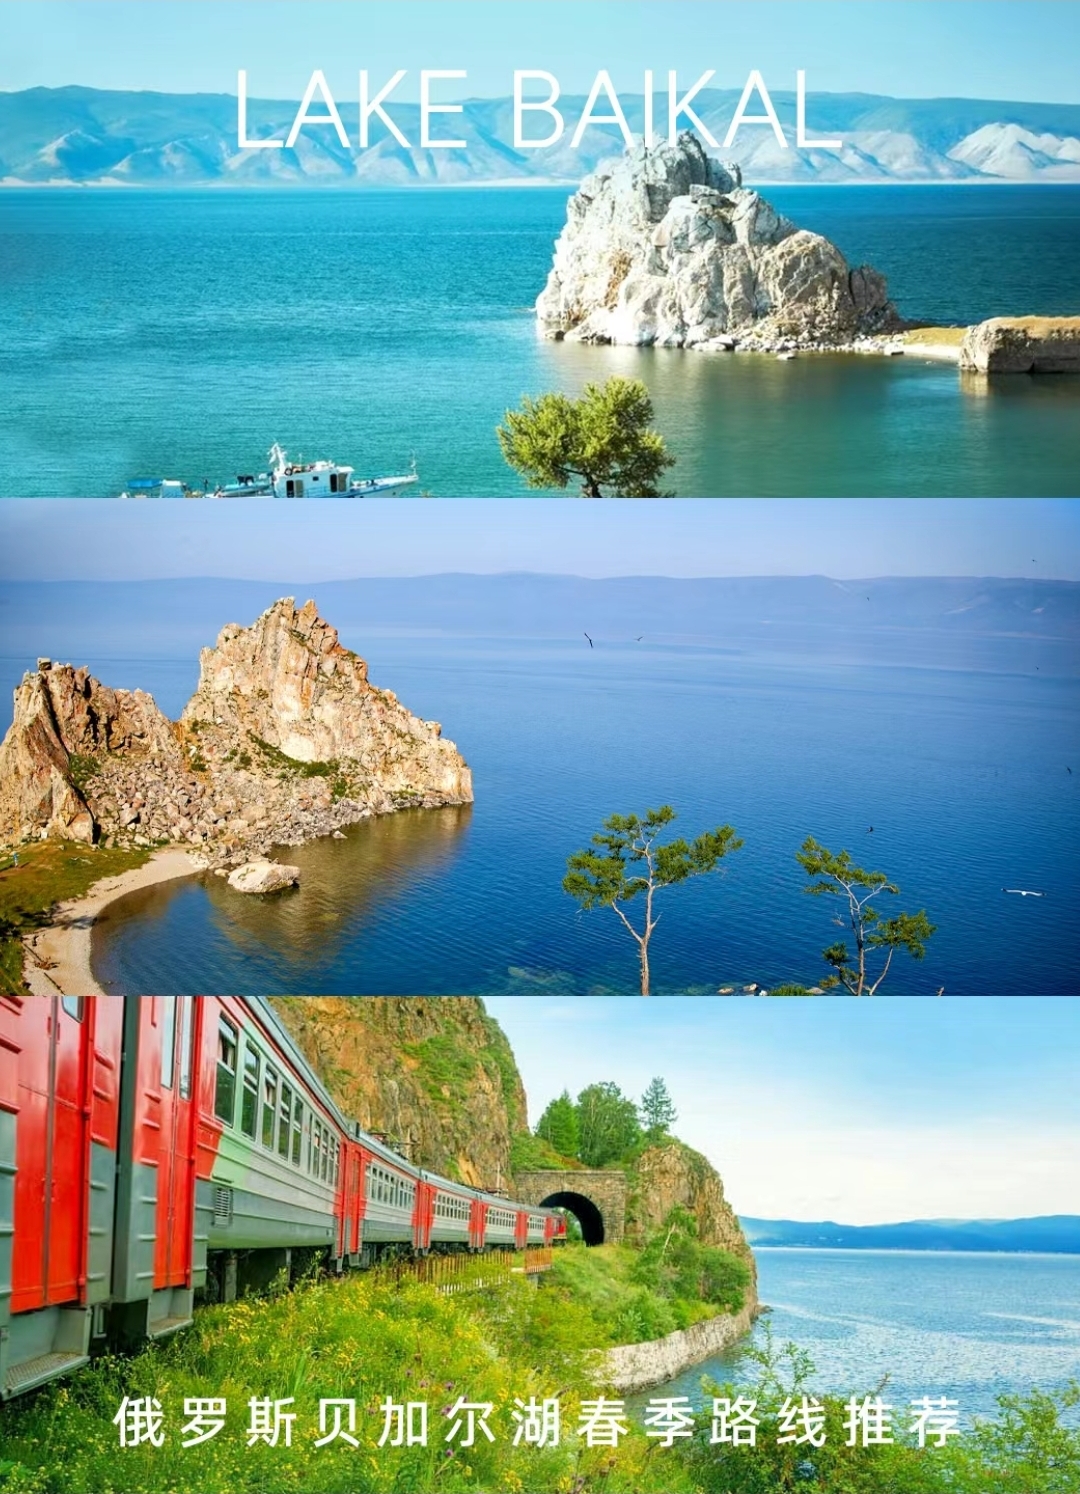 俄罗斯💫一定来做一次贝加尔湖环湖火车💤⭐⭐